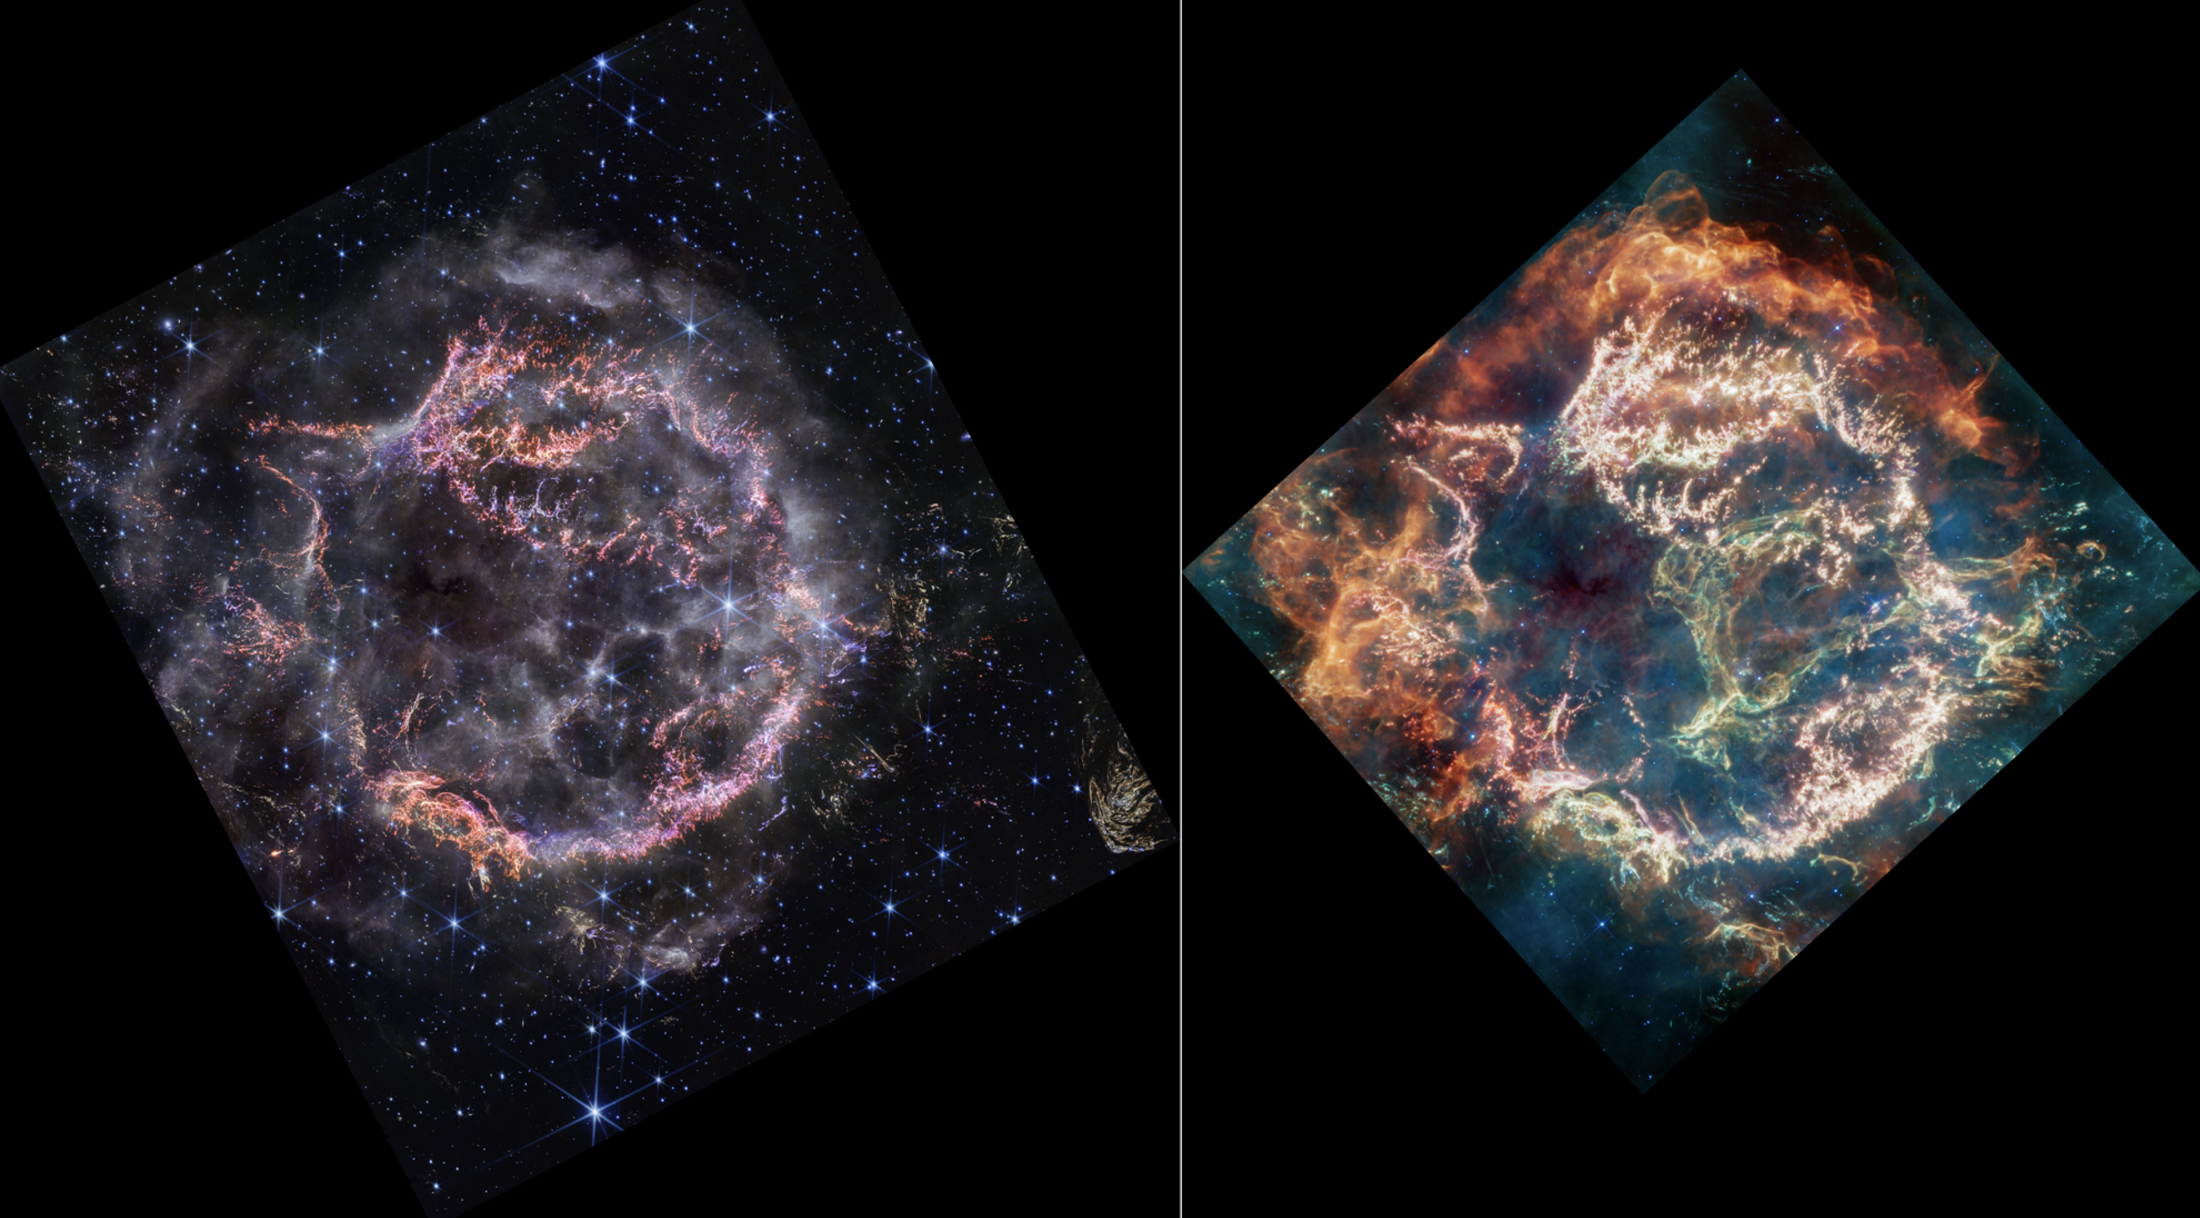 Ova slika prikazuje usporedbu s jedne na druge strane ostatka supernove Kasiopeja A (Cas A) kako ga je uhvatio NIRCam (Kamera bliskog infracrvenog spektra) i MIRI (Instrument srednjeg infracrvenog spektra) svemirskog teleskopa James Webb NASA-e.